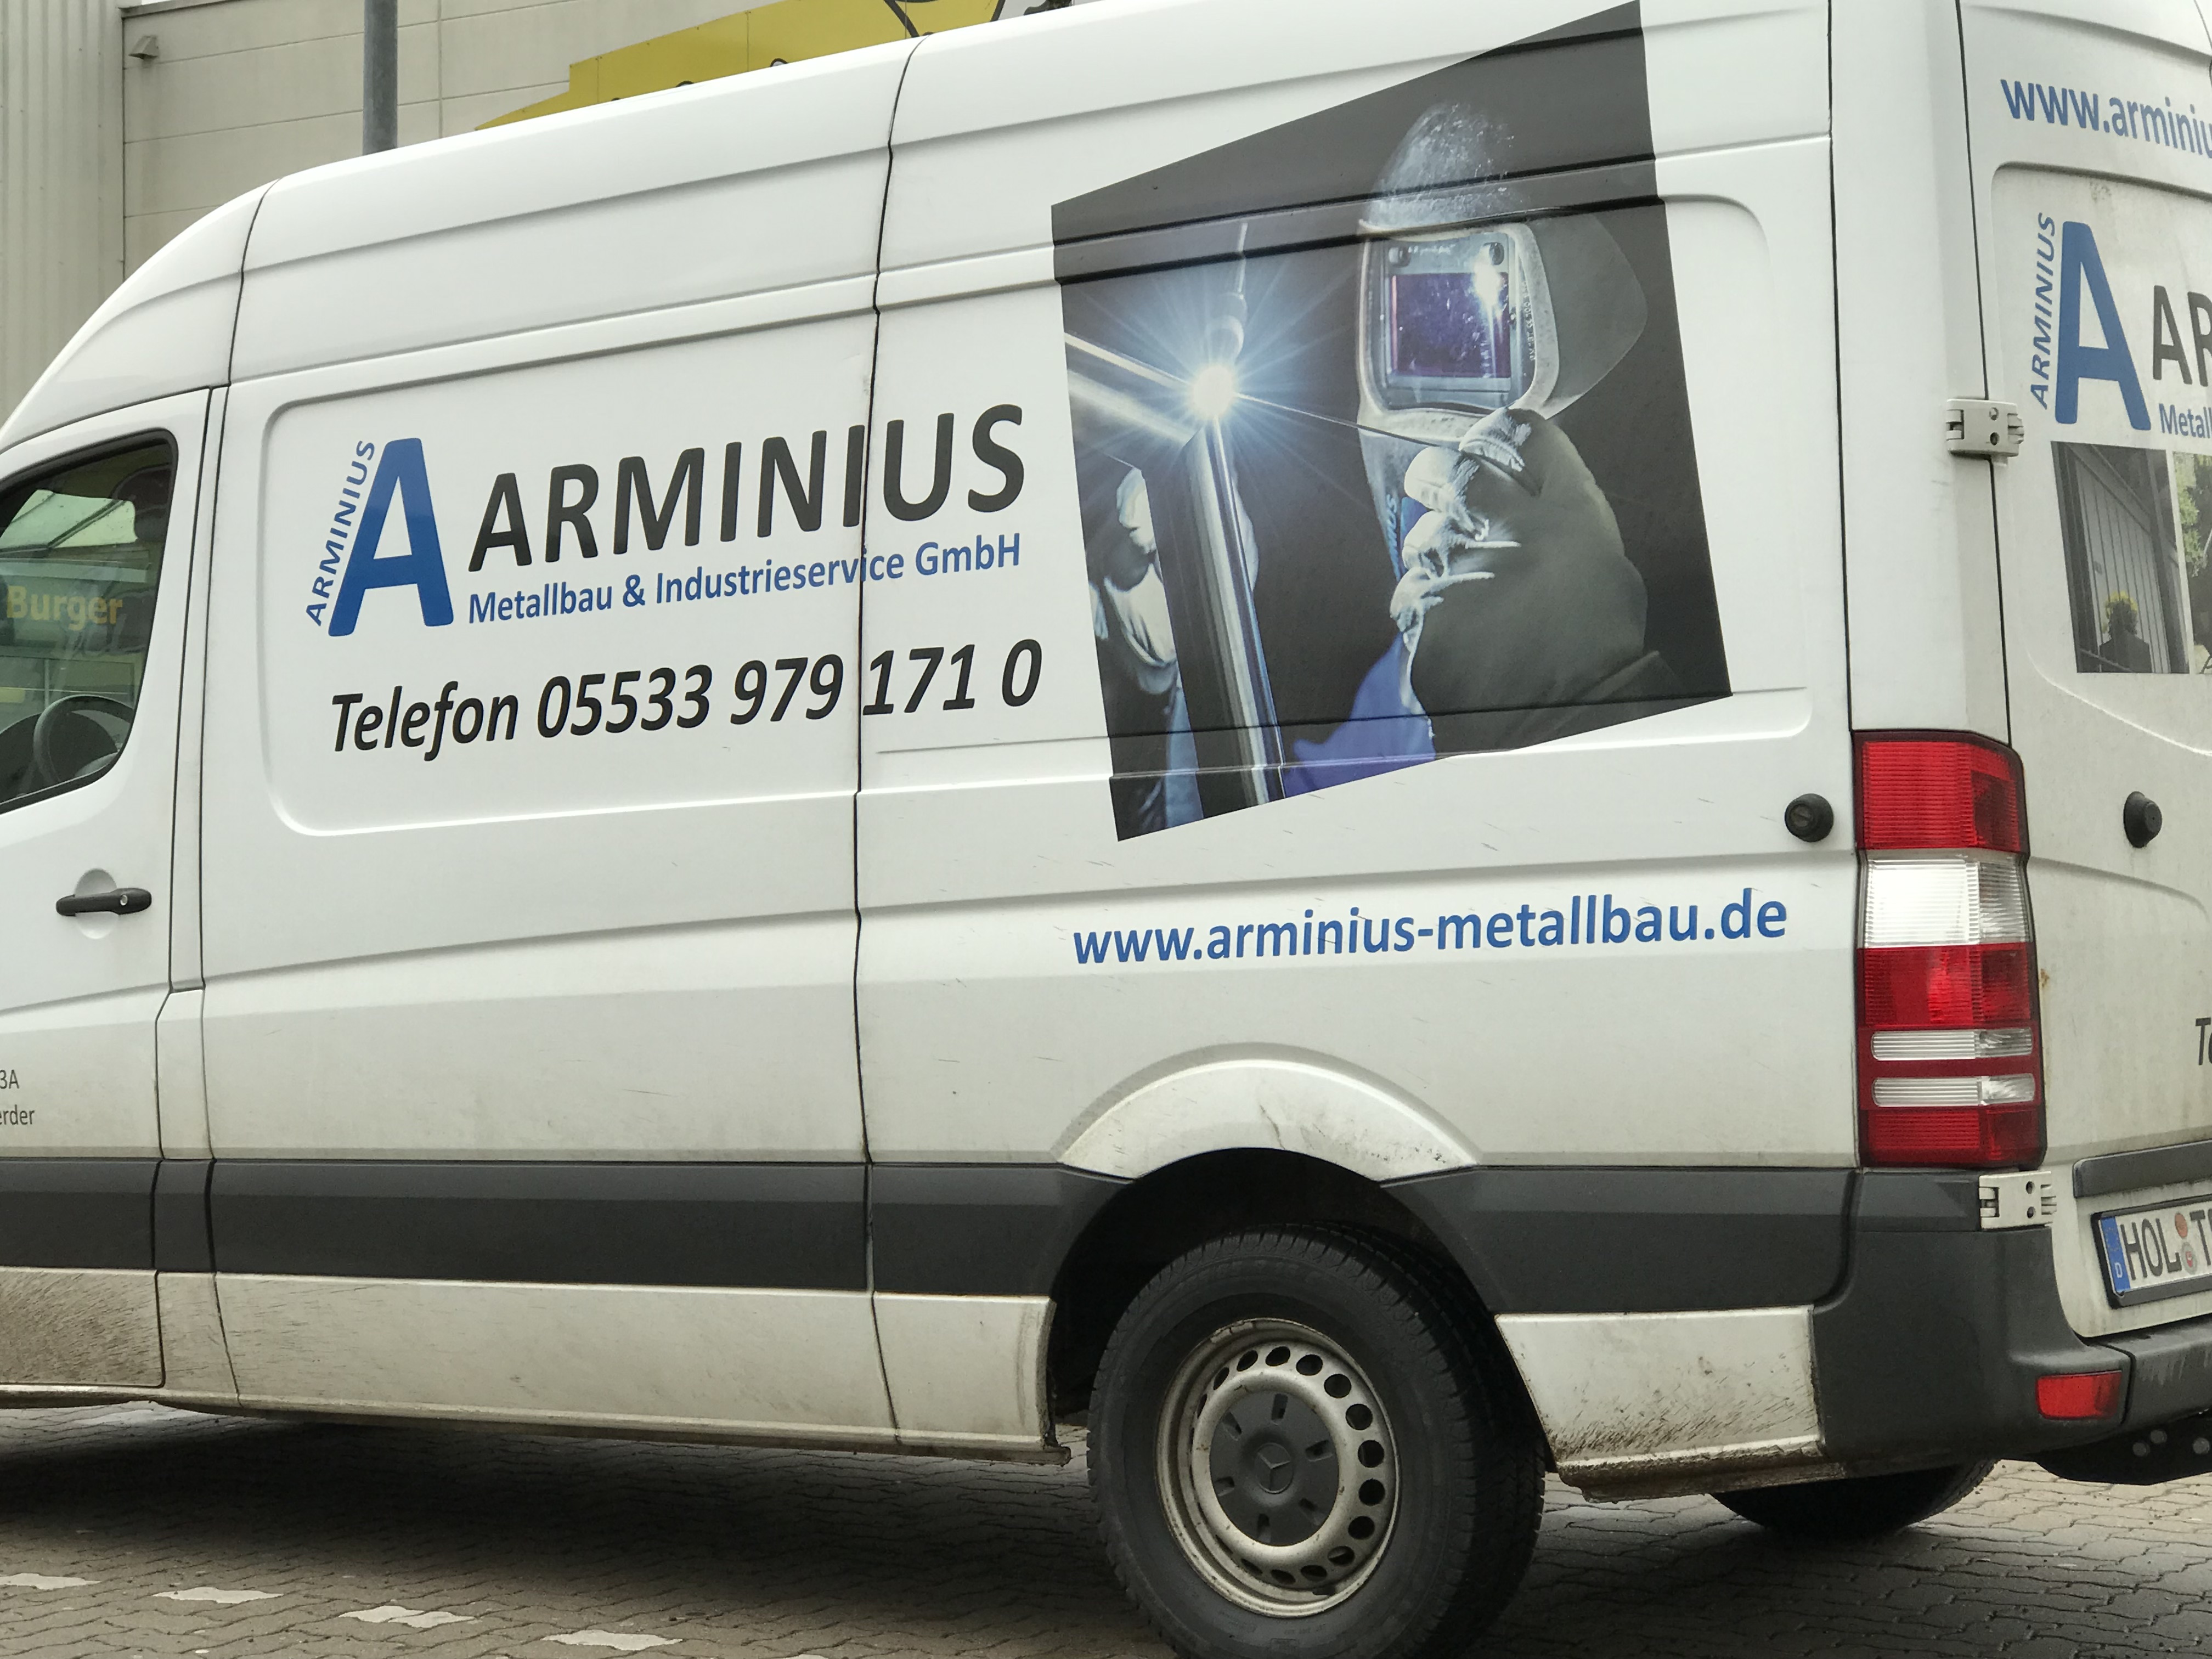 Bild 1 ARMINIUS Metallbau & Industrieservice GmbH in Bodenwerder